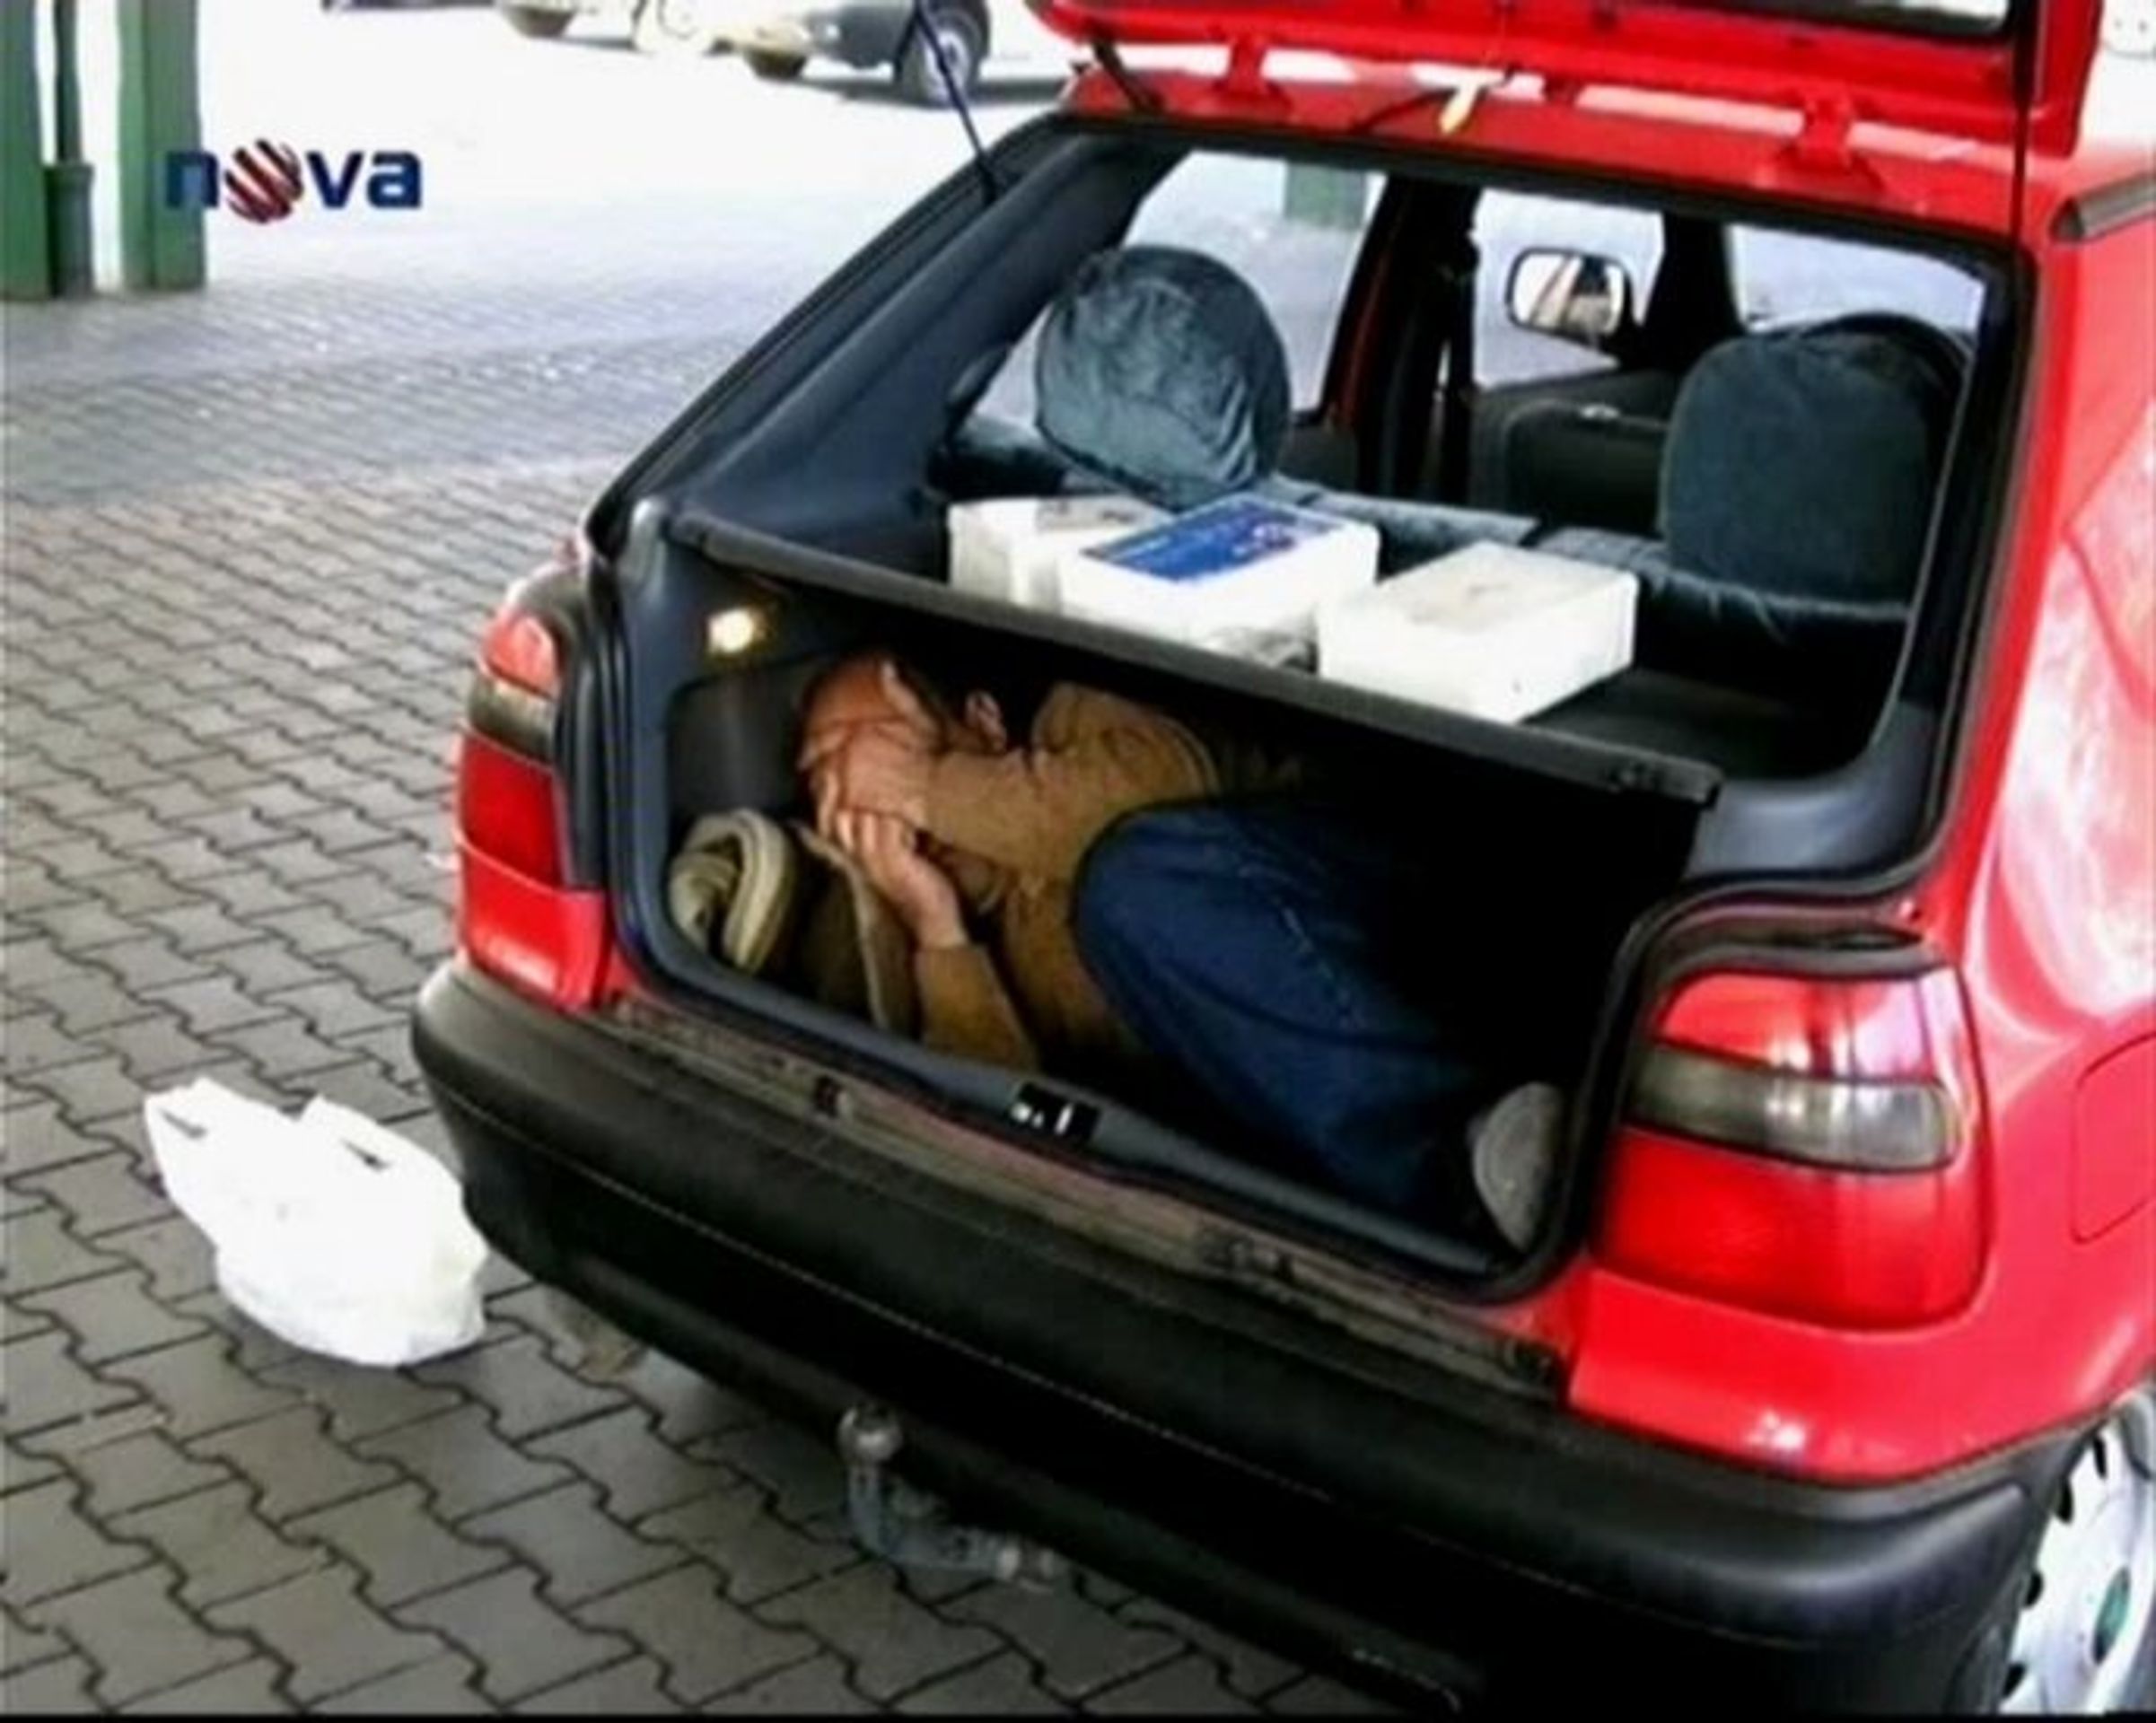 Iráčan v kufru auta - Ženy převážely Iráčana v kufru do Německa (1/2)